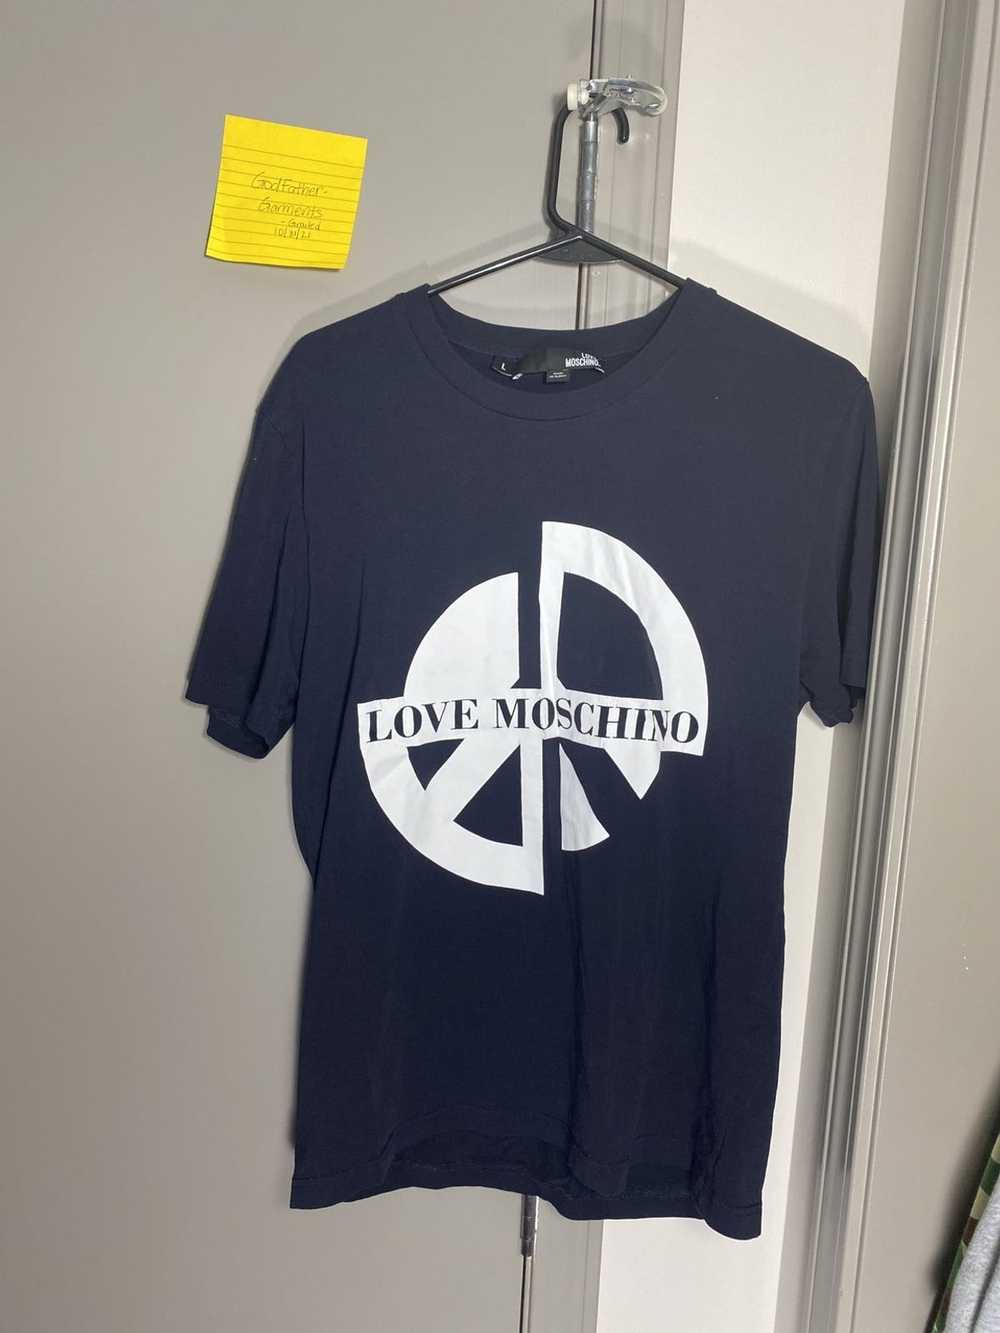 Moschino Love Moschino Shirt - image 1